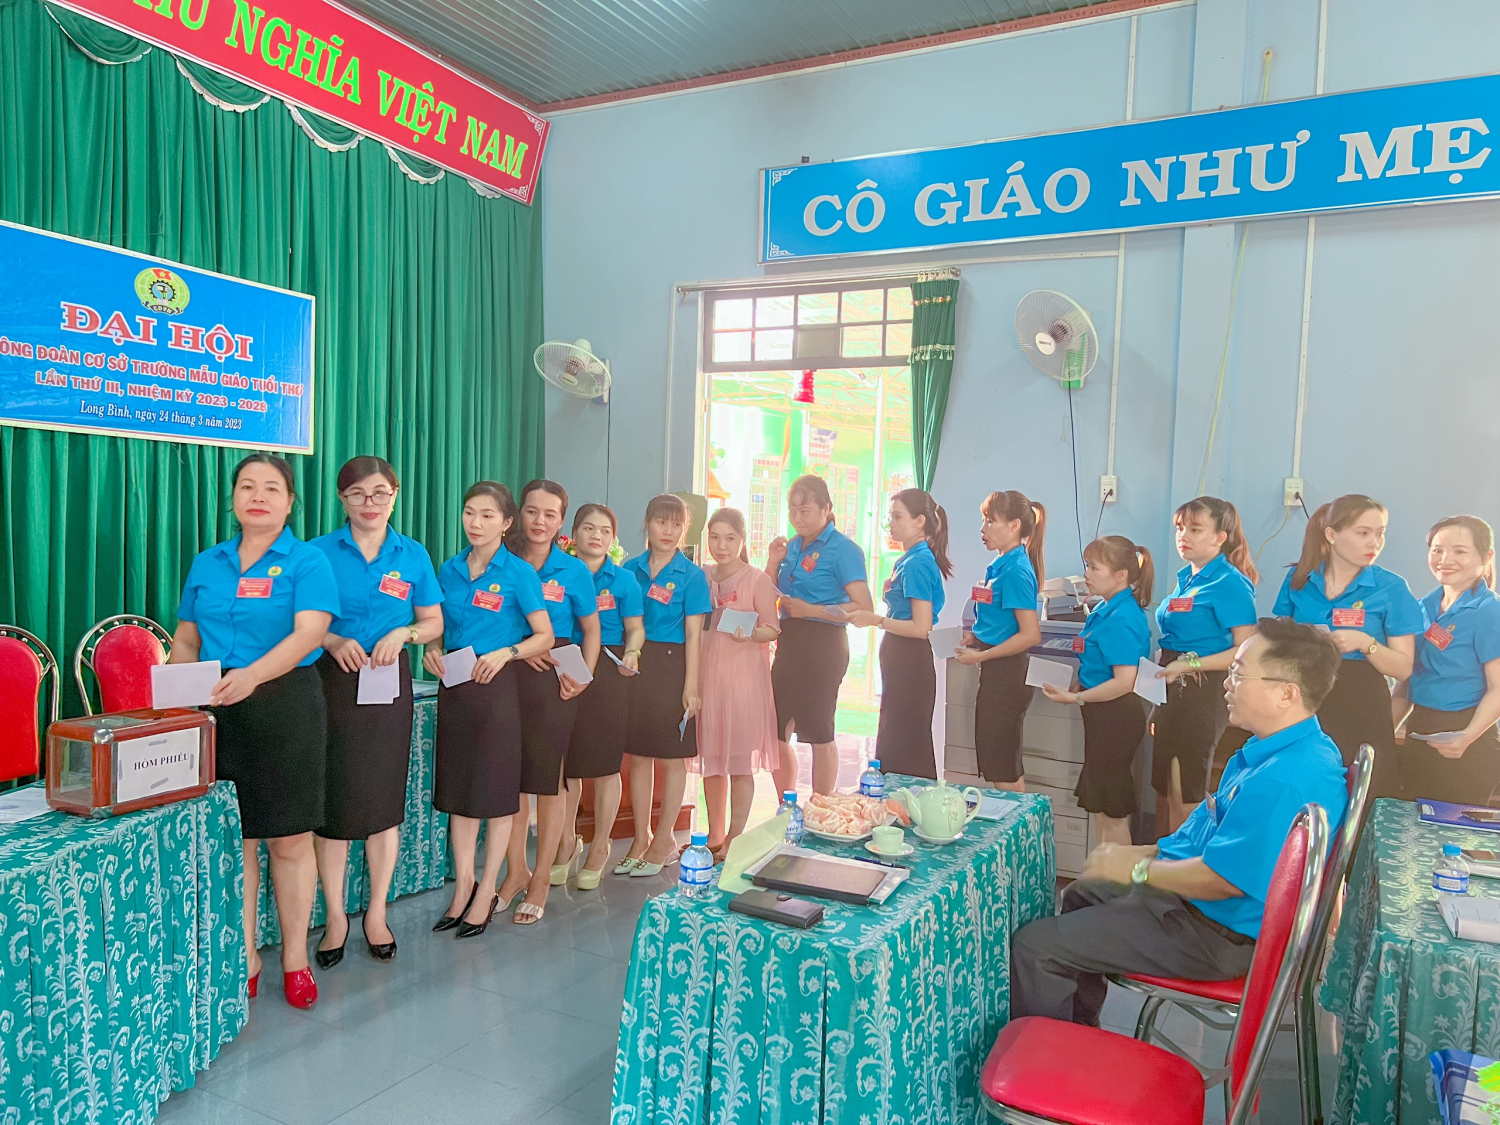 Đồng chí Nguyễn Thị Thuần được Đại hội bầu giữ chức Chủ tịch CĐCS Trường MG Tuổi Thơ